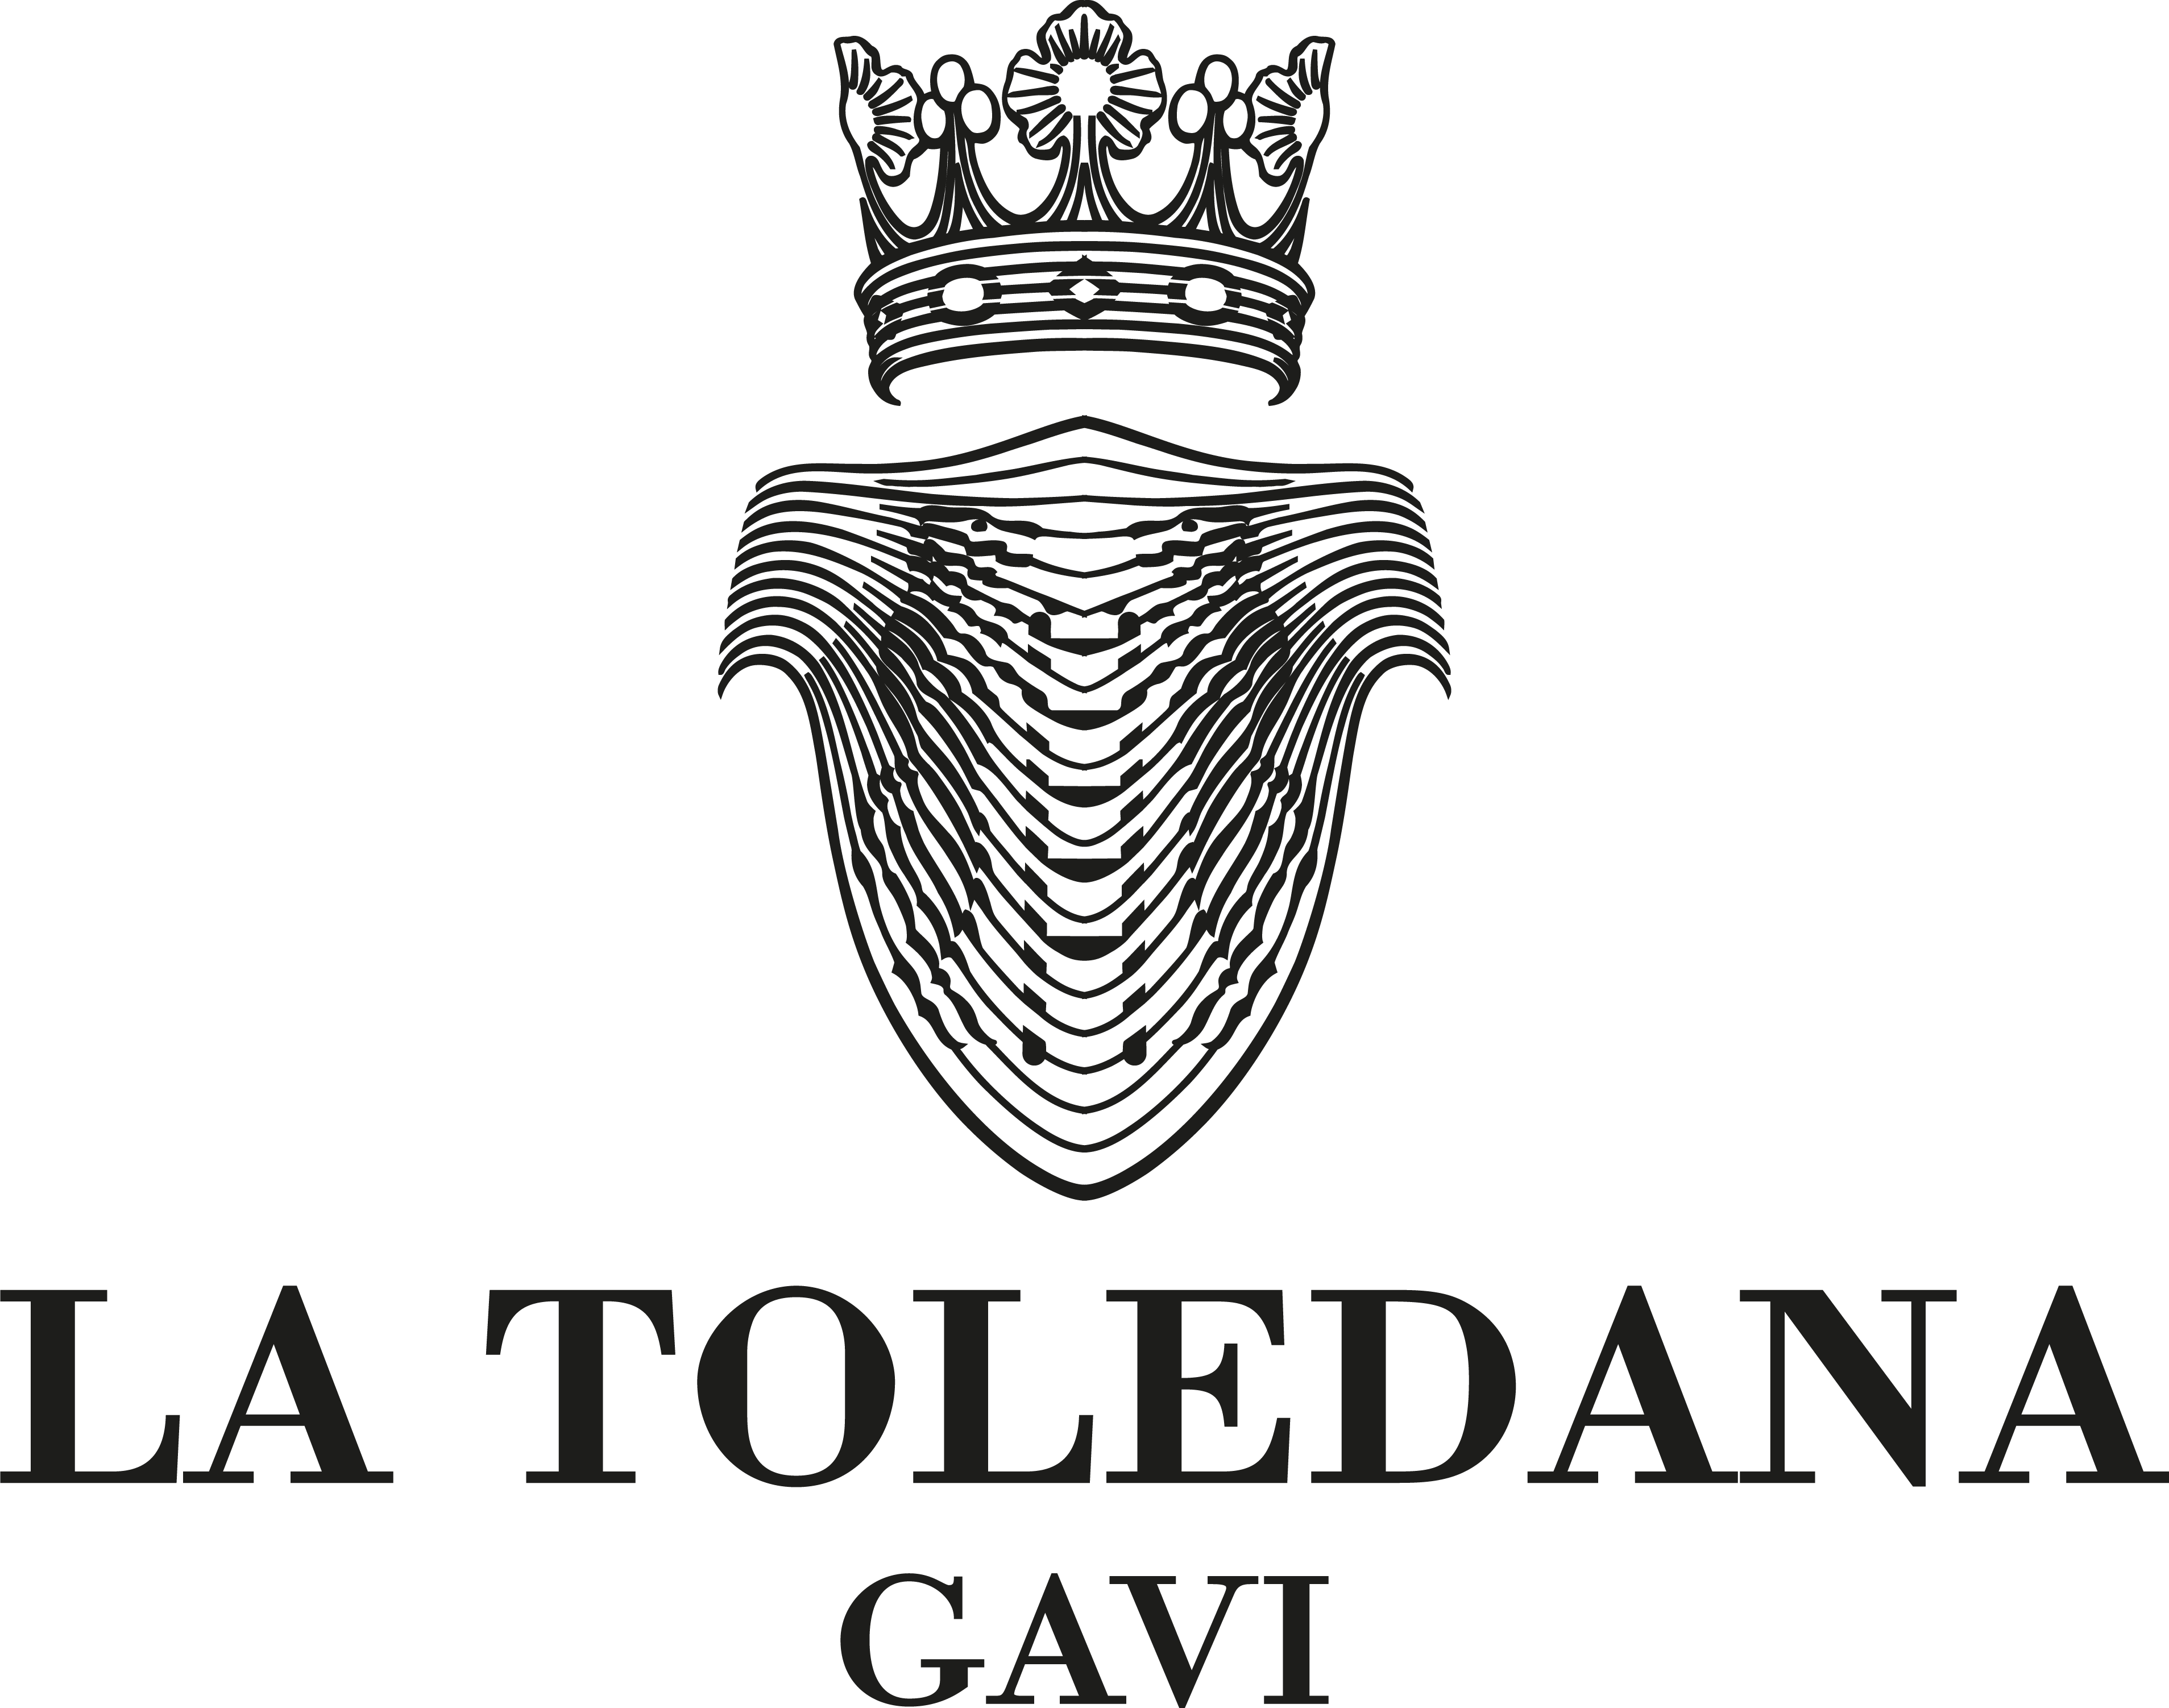 La Toledana